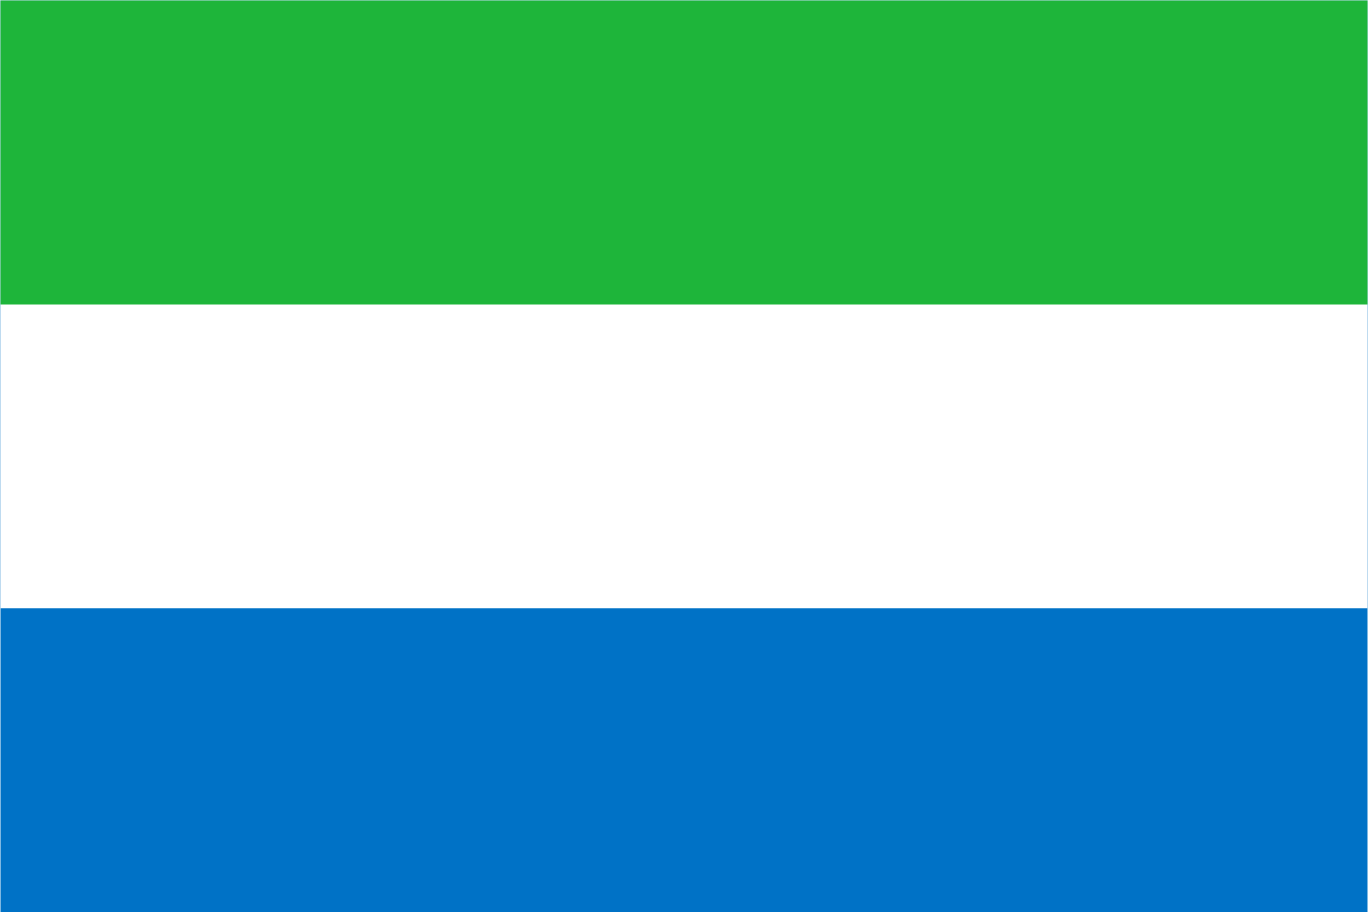 Sierra Leone Flag and Emblem - PNG Logo Vector Brand Downloads (SVG, EPS)